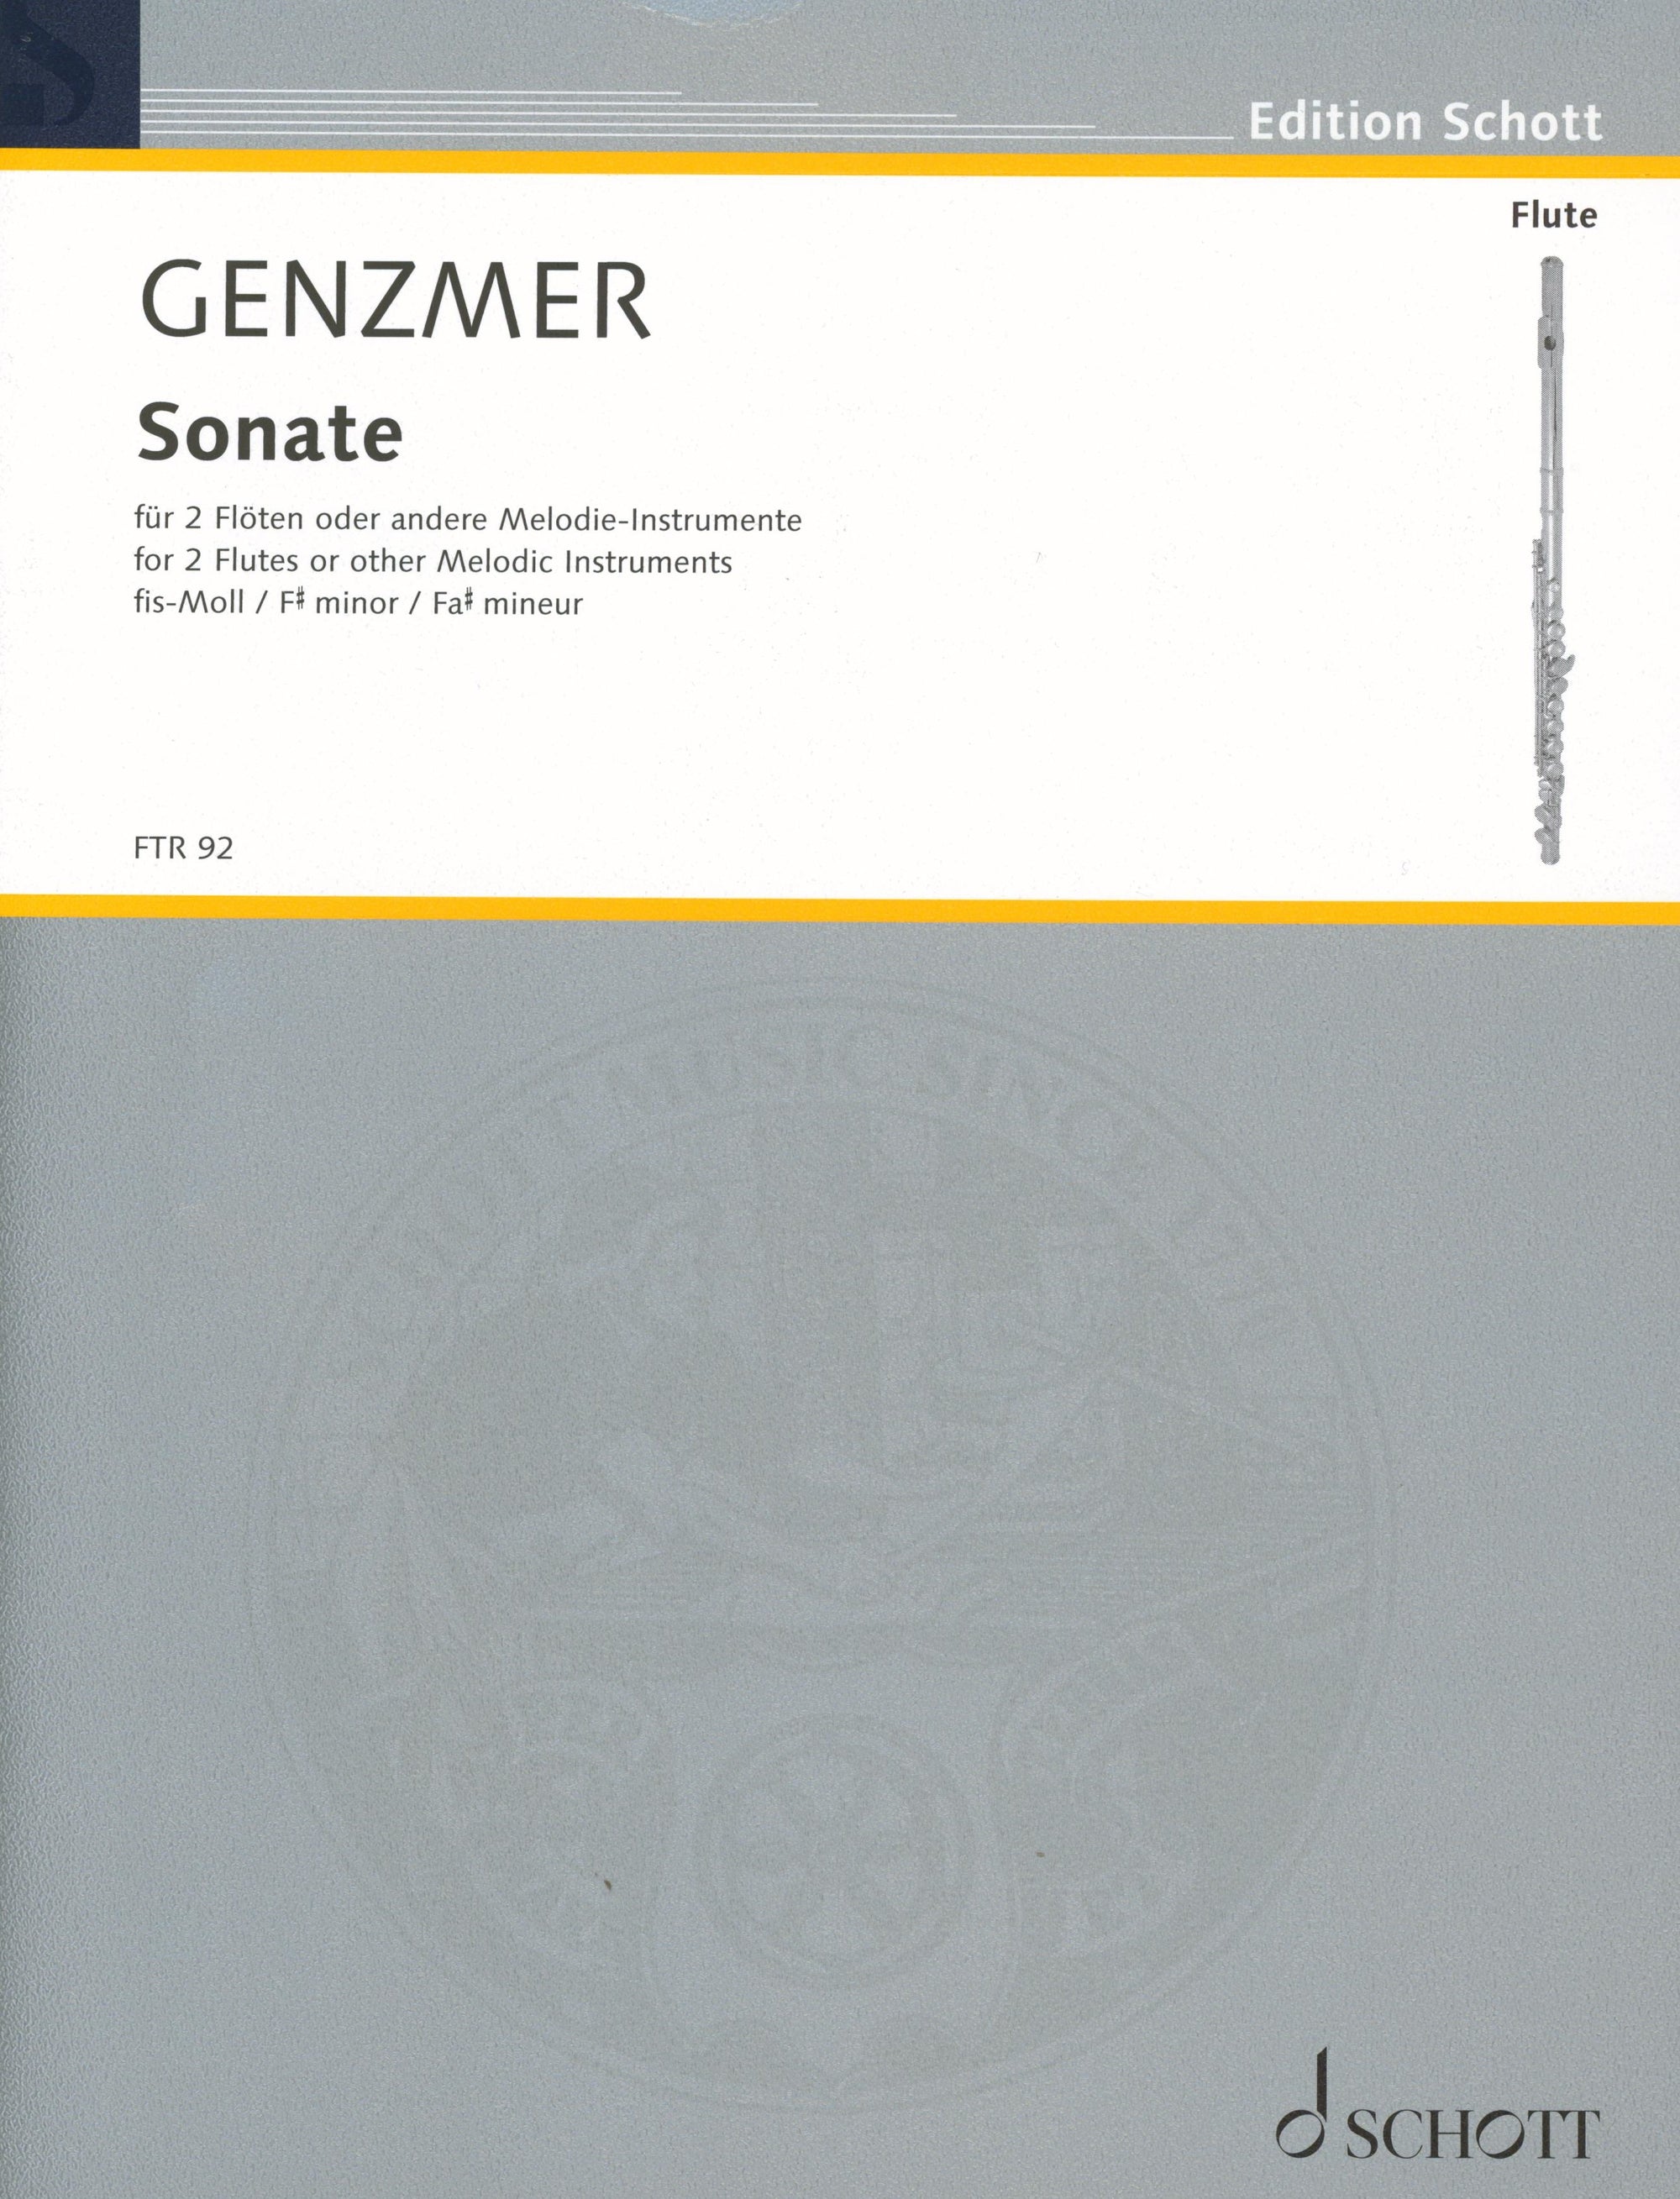 Genzmer: Sonata for 2 Flutes in F-sharp Minor, GeWV 266